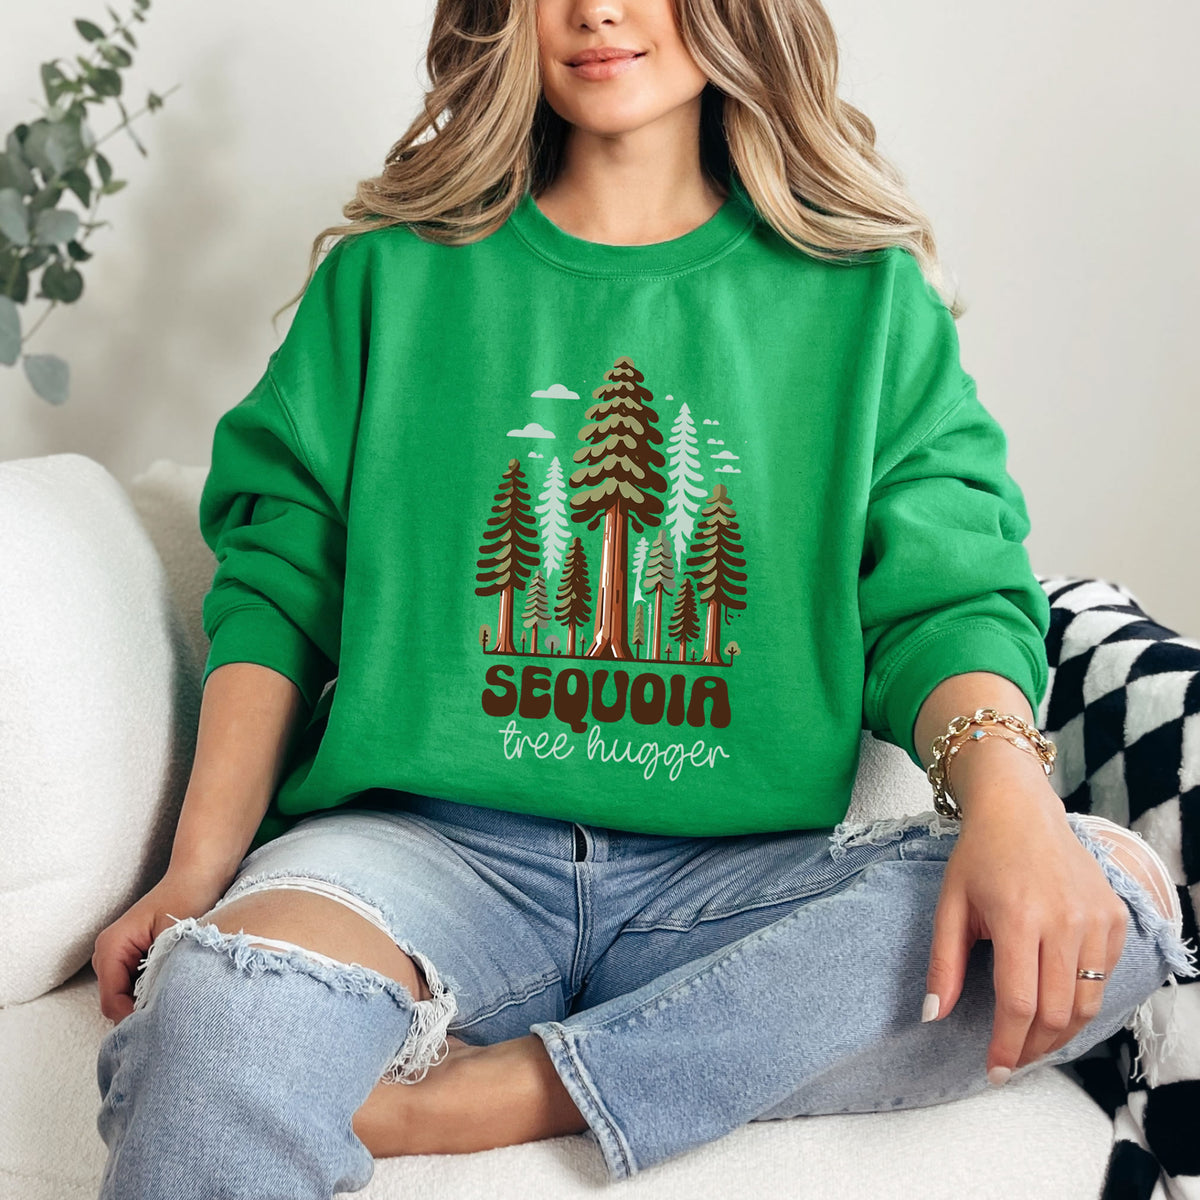 Sequoia National Park Shirt | Sequoia Tree Hugger Shirt  | Irish Green Sweatshirt